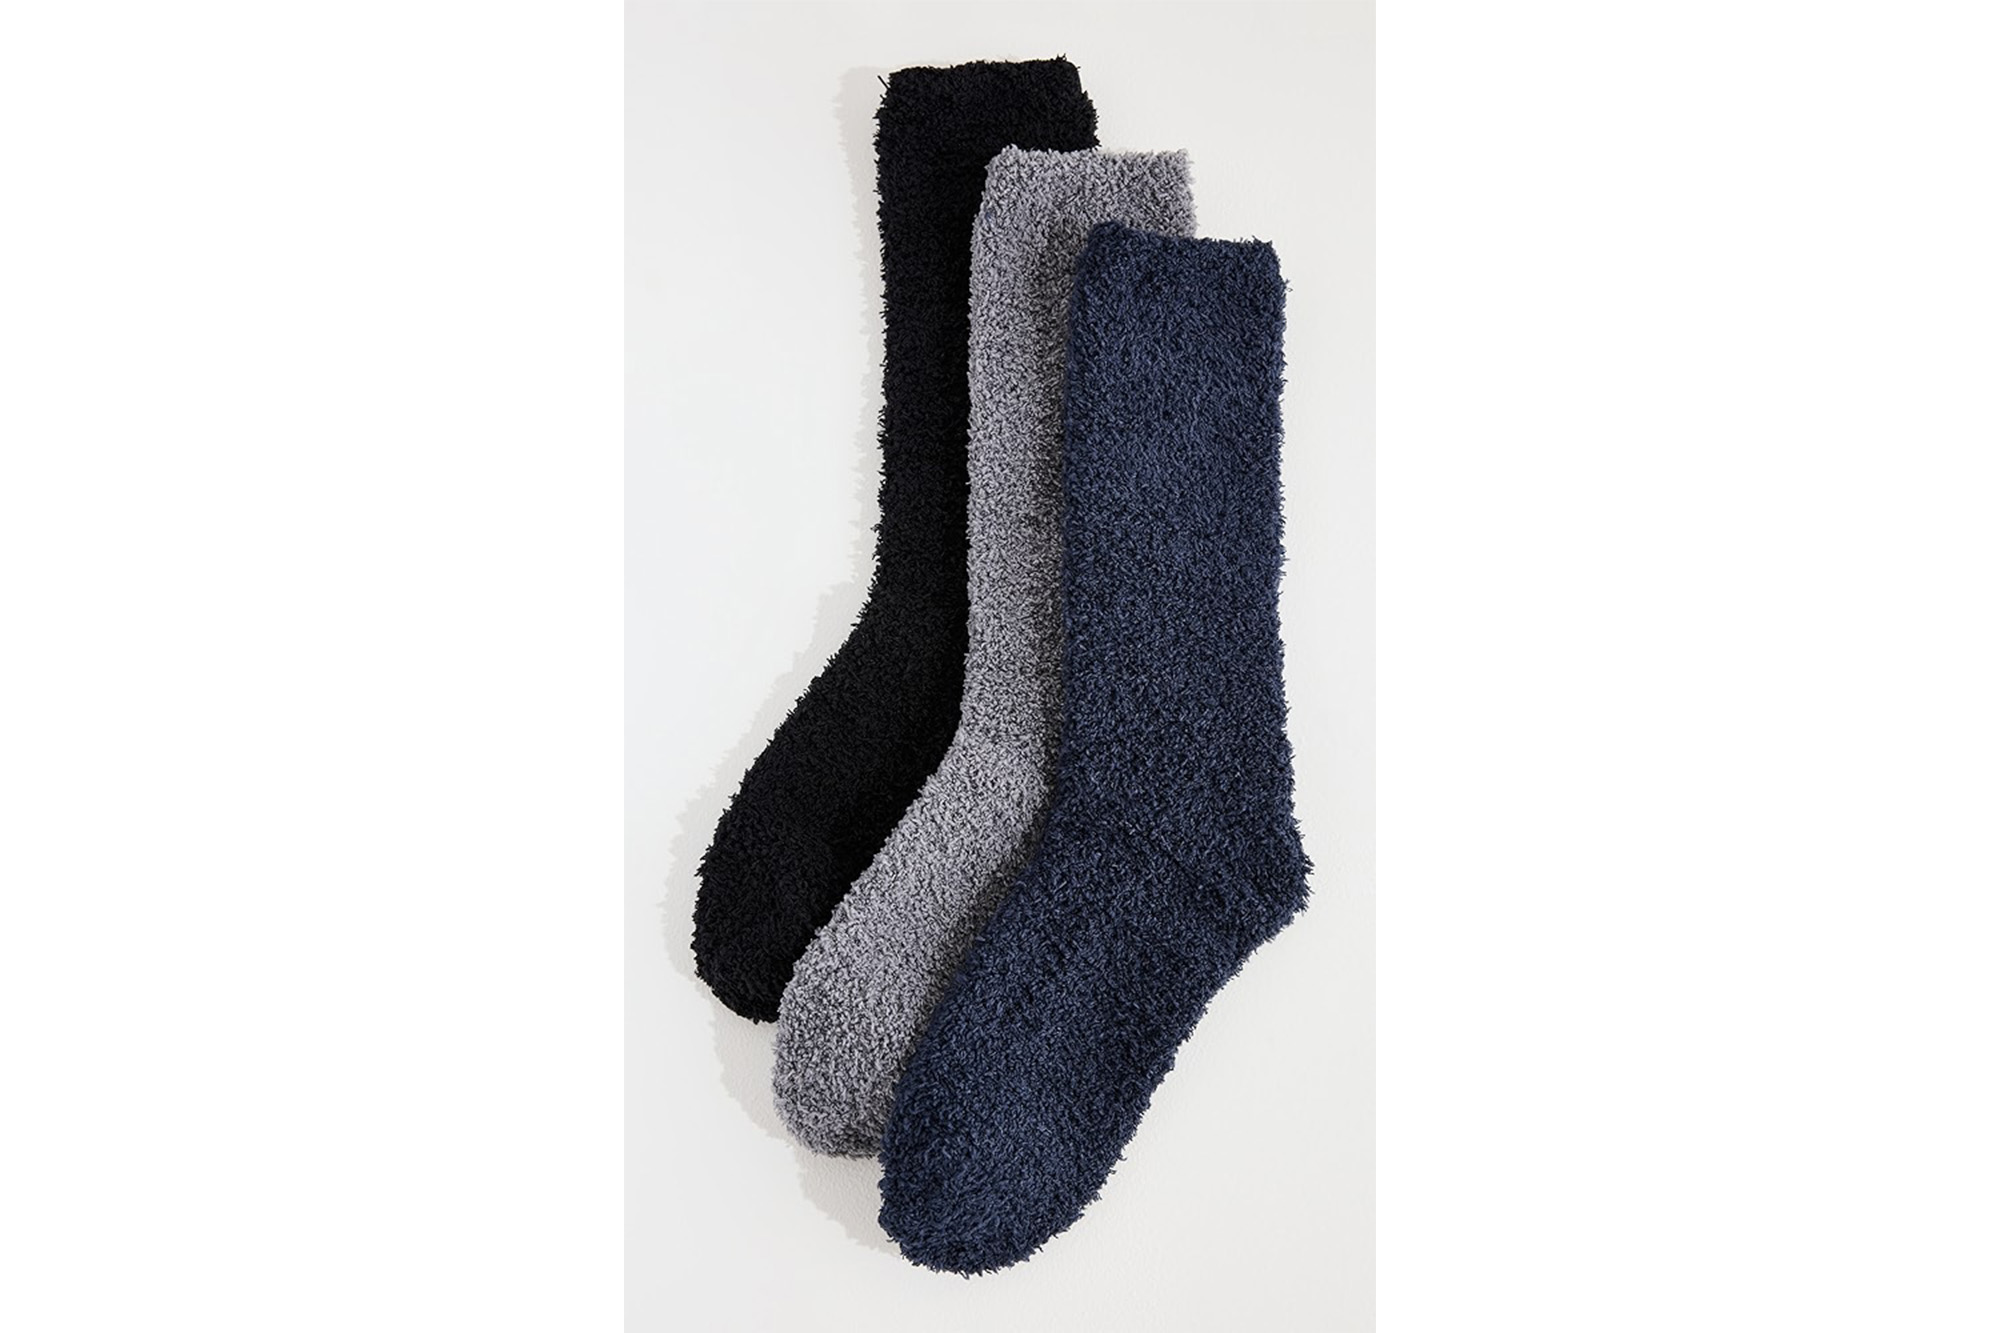 Drei flauschige Socken